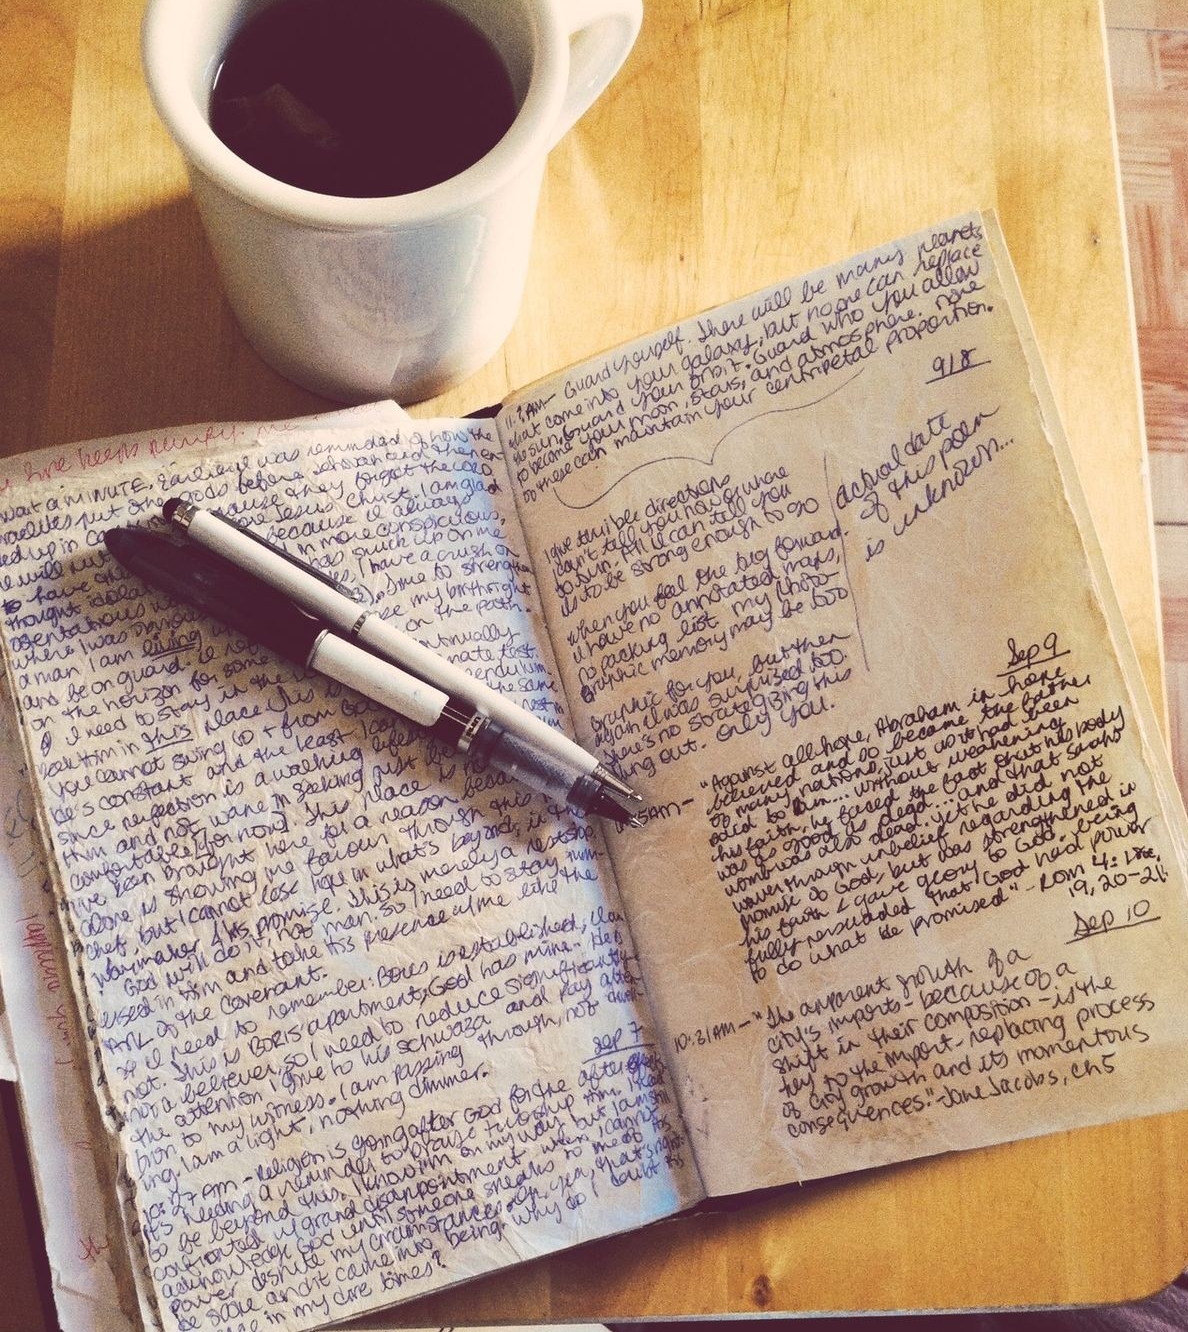 Tenere un diario segreto aiuta a mettere ordine nei tuoi pensieri